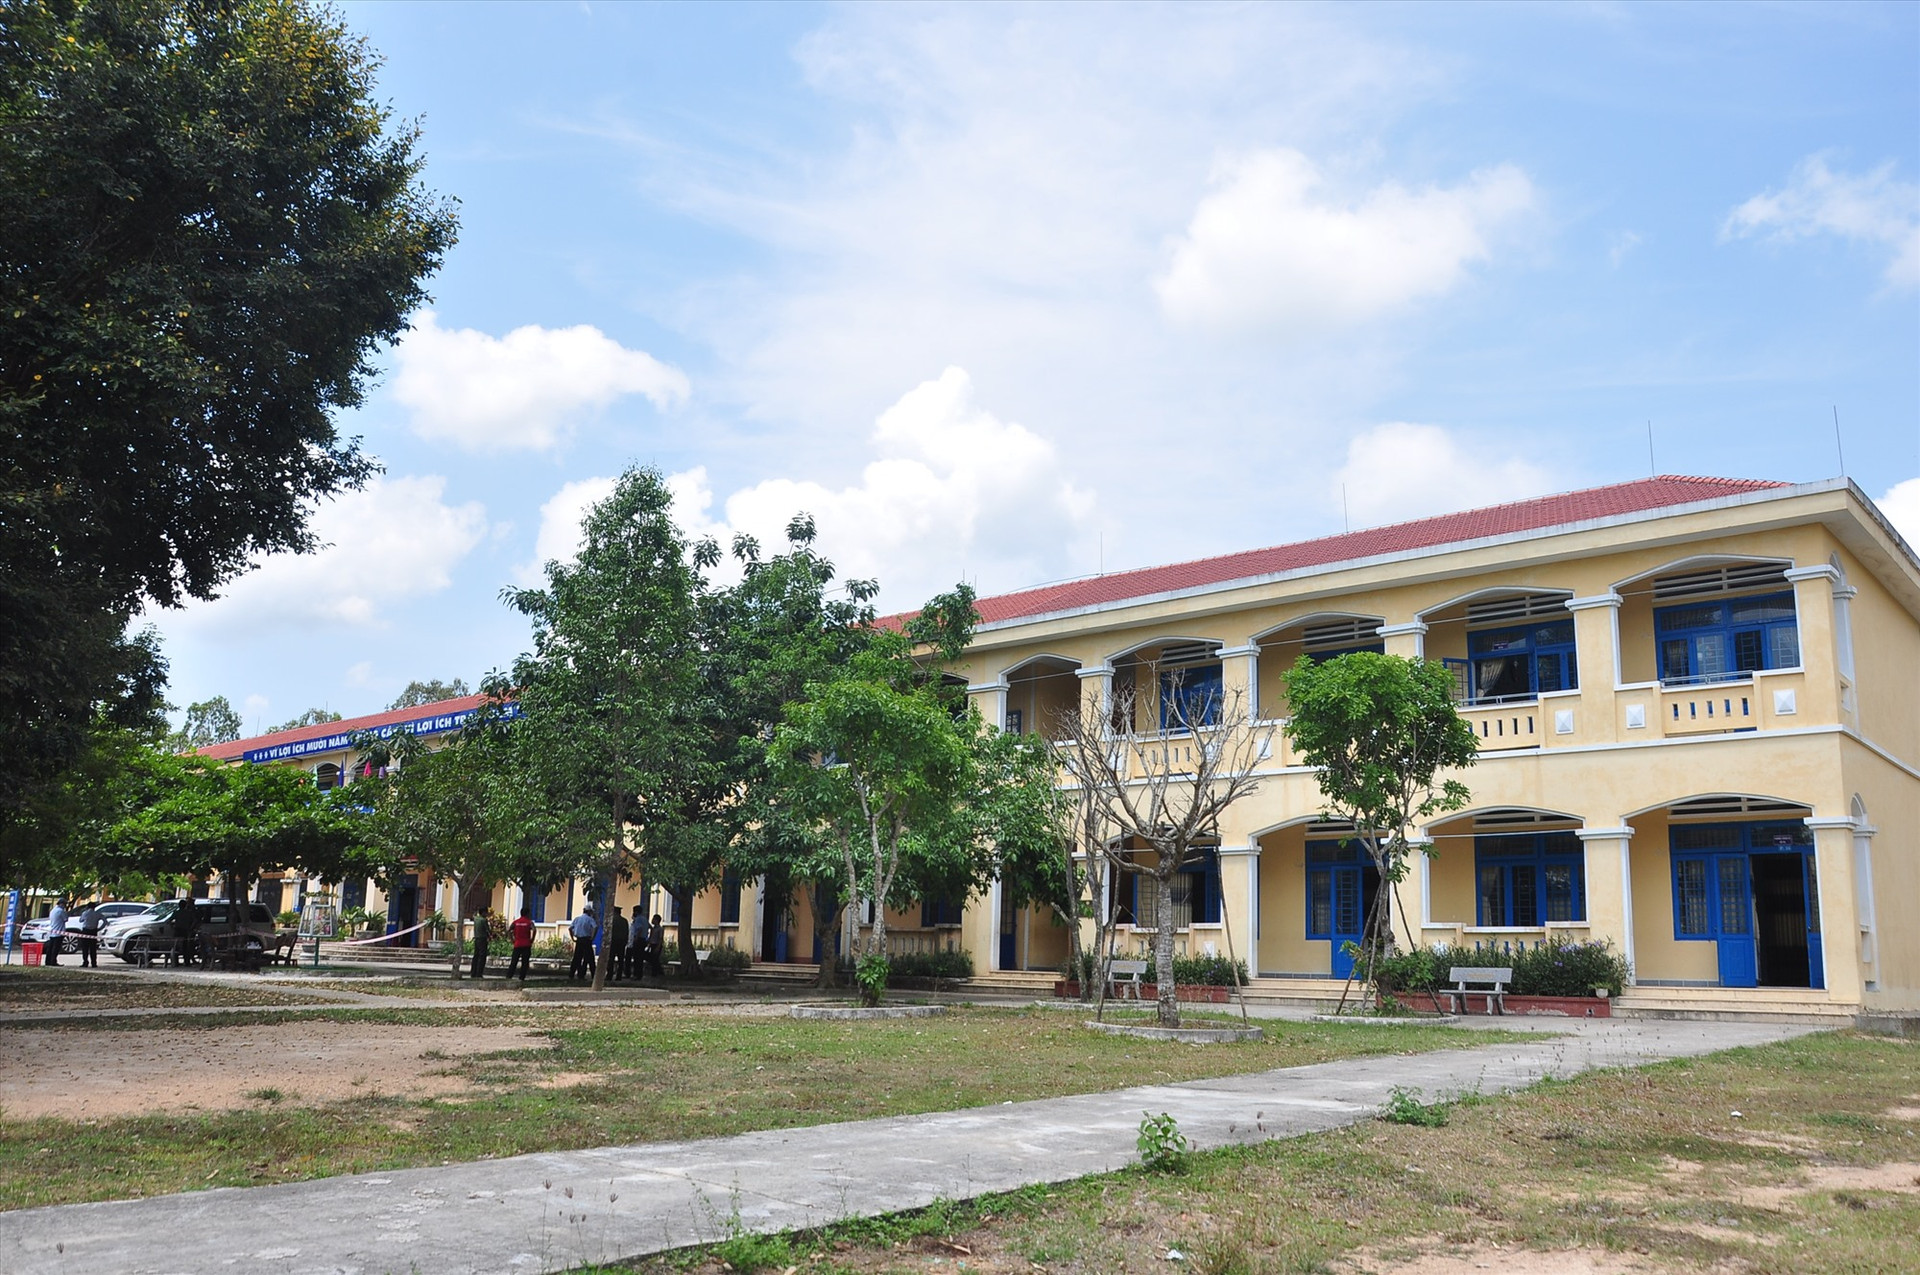 Ngày 4.4, huyện Phú Ninh huy động lực lượng chuẩn bị các điều kiện cần thiết thành lập thêm khu cách ly thứ 2 tại Trường Tiểu học Nguyễn Hiền. Ảnh: VINH ANH